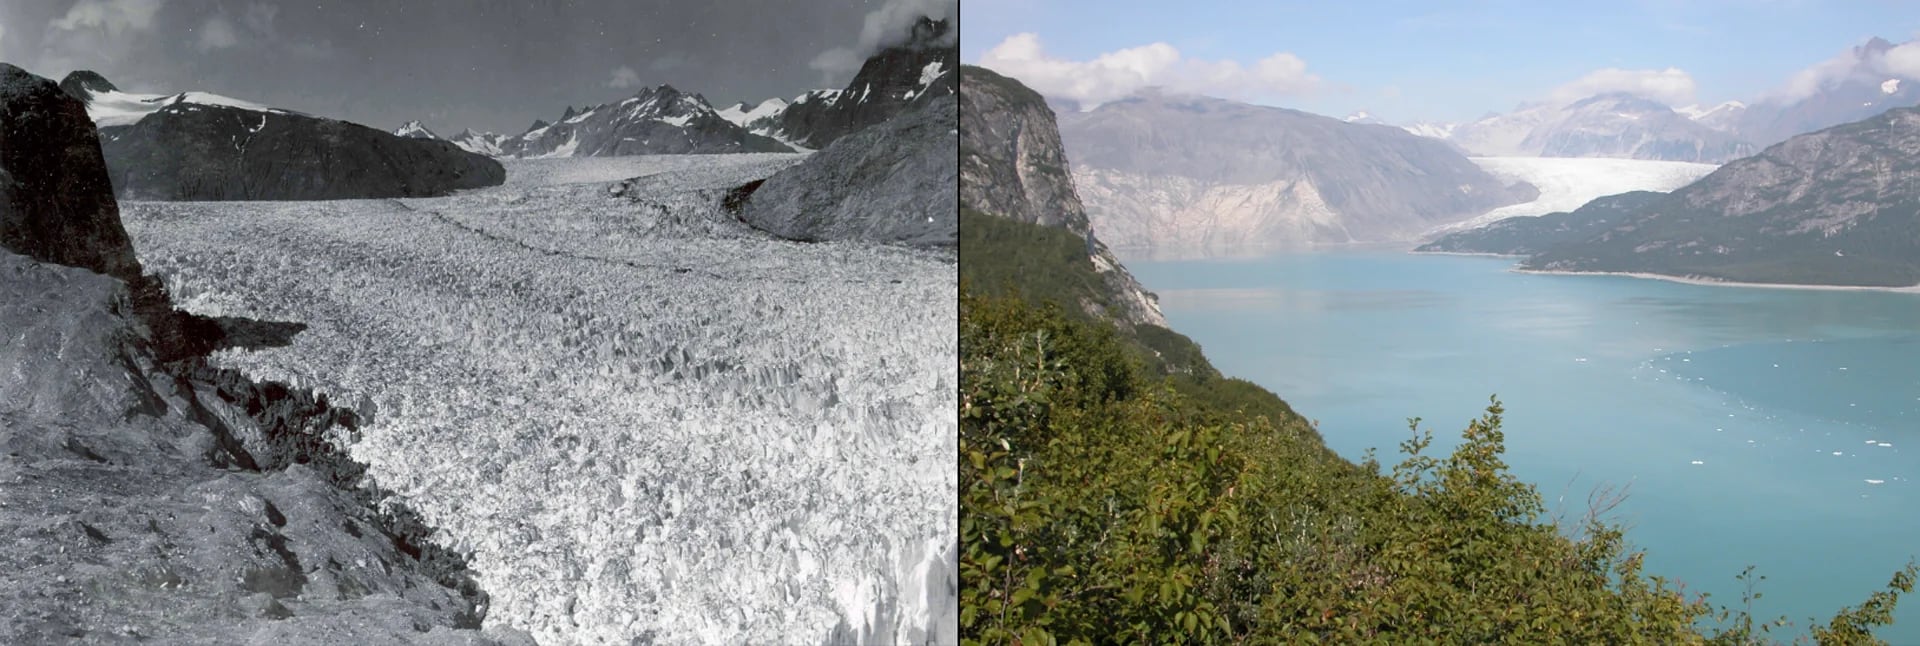 Derretimiento del glaciar de Muir, Alaska: del 13 de agosto de 1941 al 31 de agosto de 2004